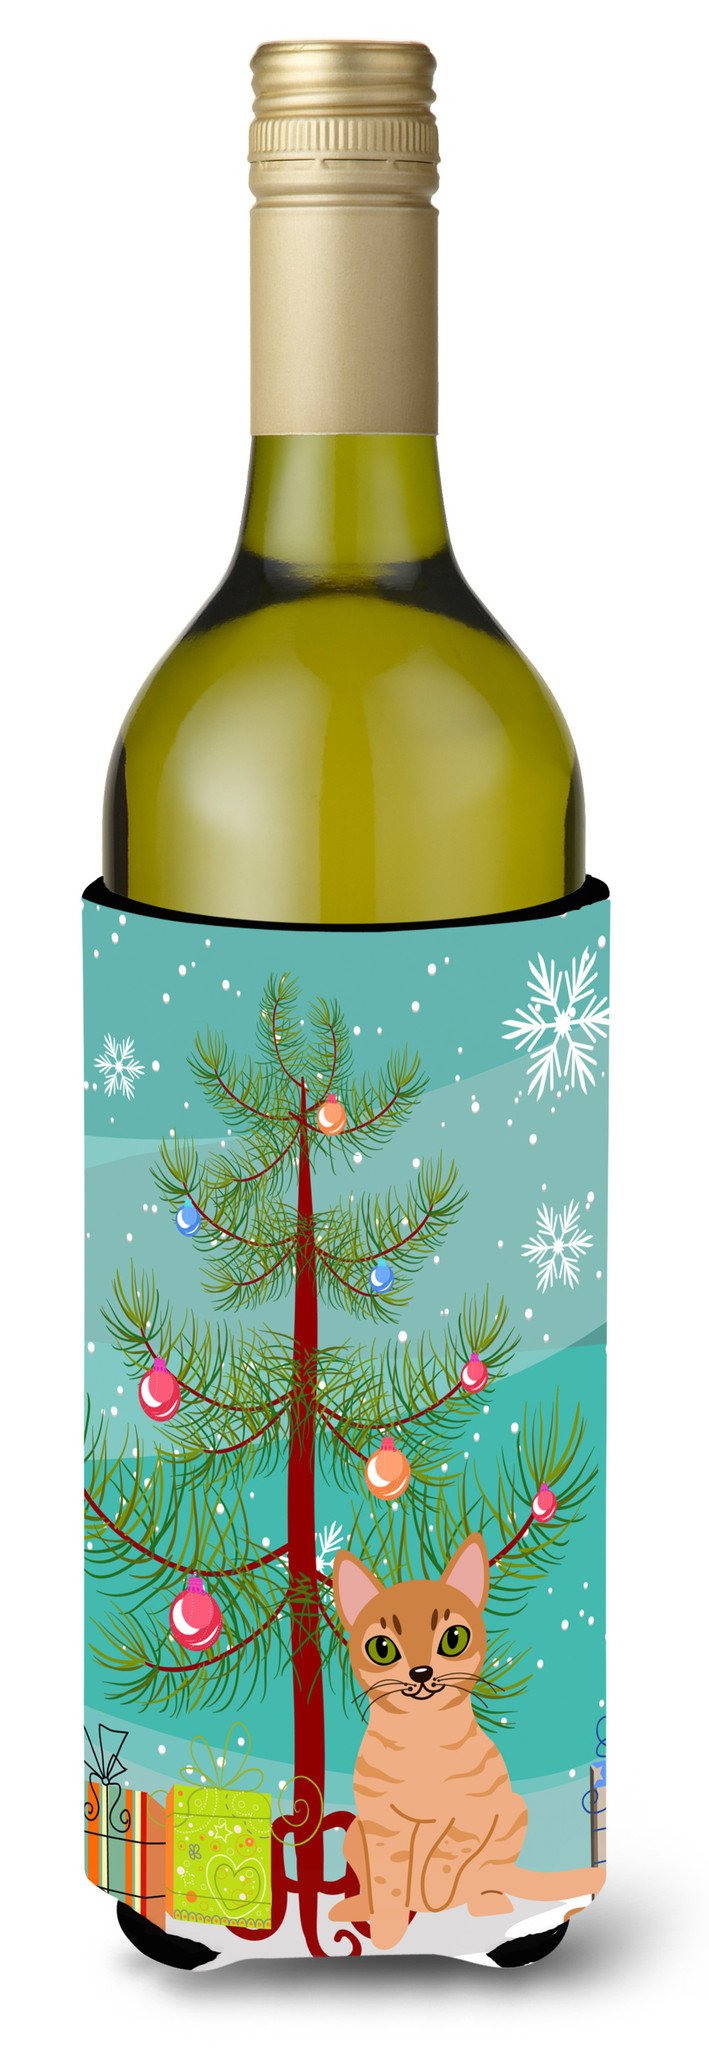 Australian Mist Cat Merry Christmas Tree Wine Bottle Beverge Insulator Hugger BB4415LITERK by Caroline's Treasures